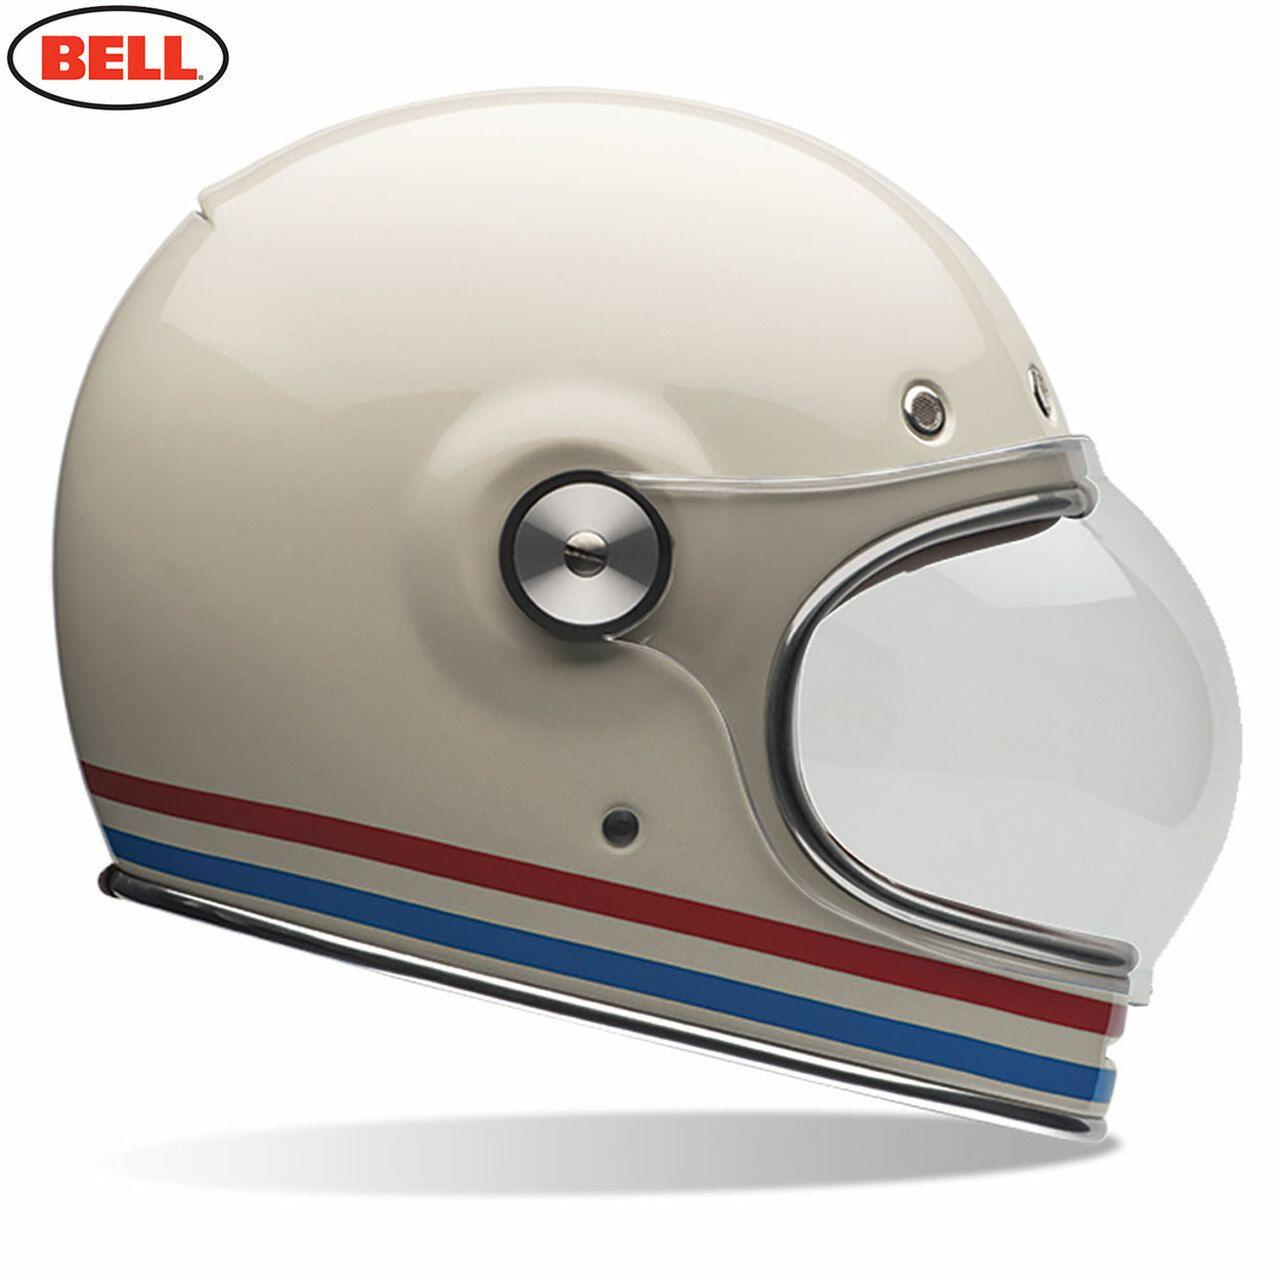 Bell 2020 Cruiser Bullitt DLX Adult Helmet Stripes Pearl White